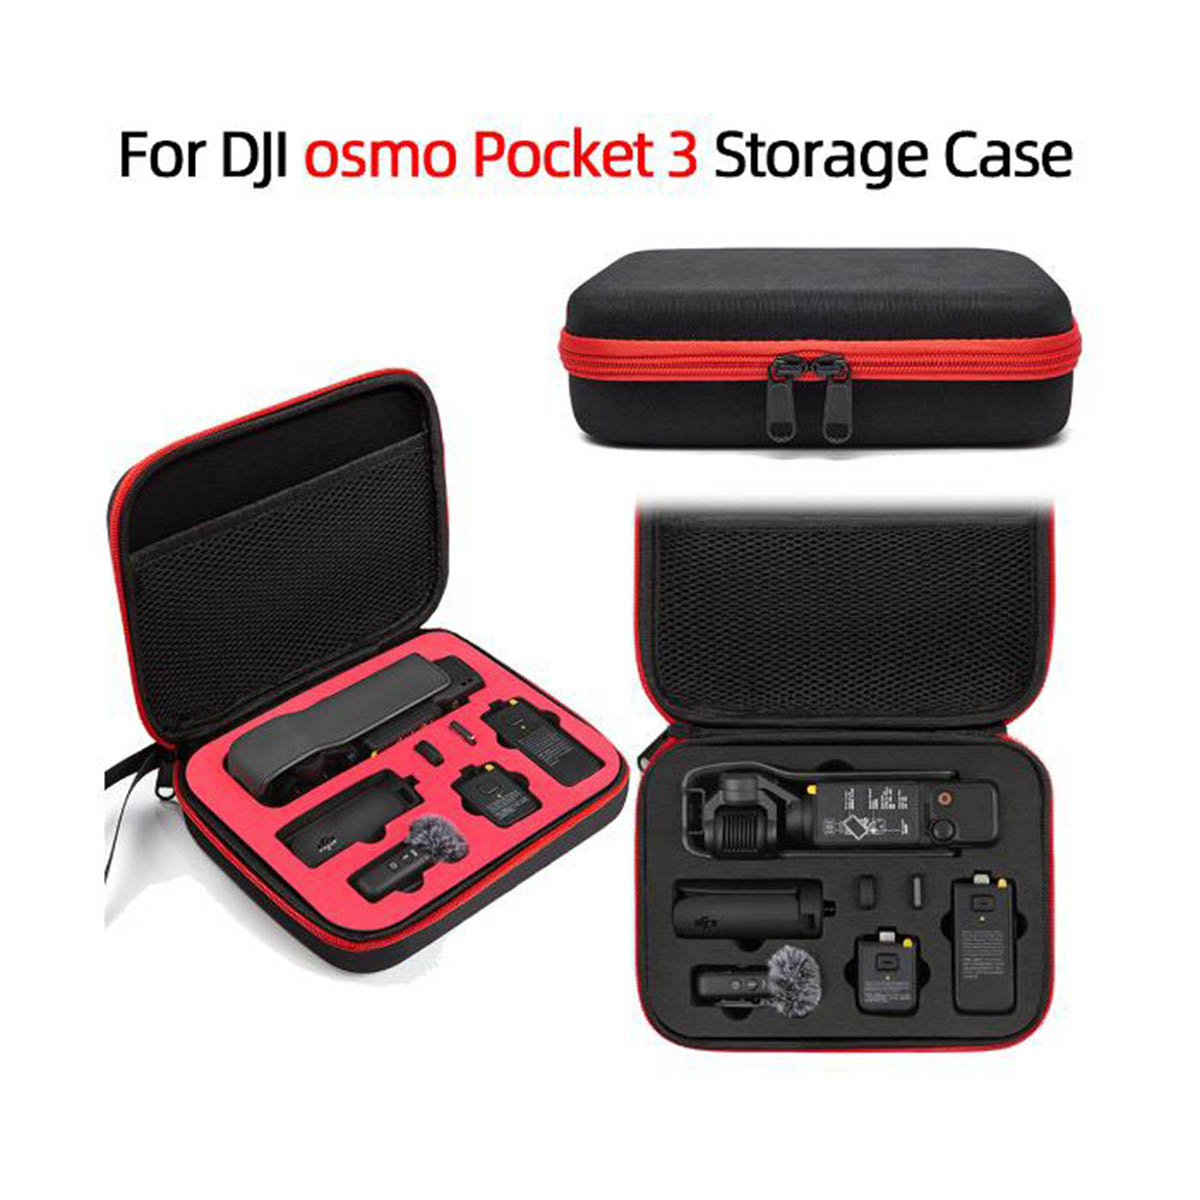 DJI Pocket 3 Hard Case - Drone Depot - NZ Authorised DJI Retailer